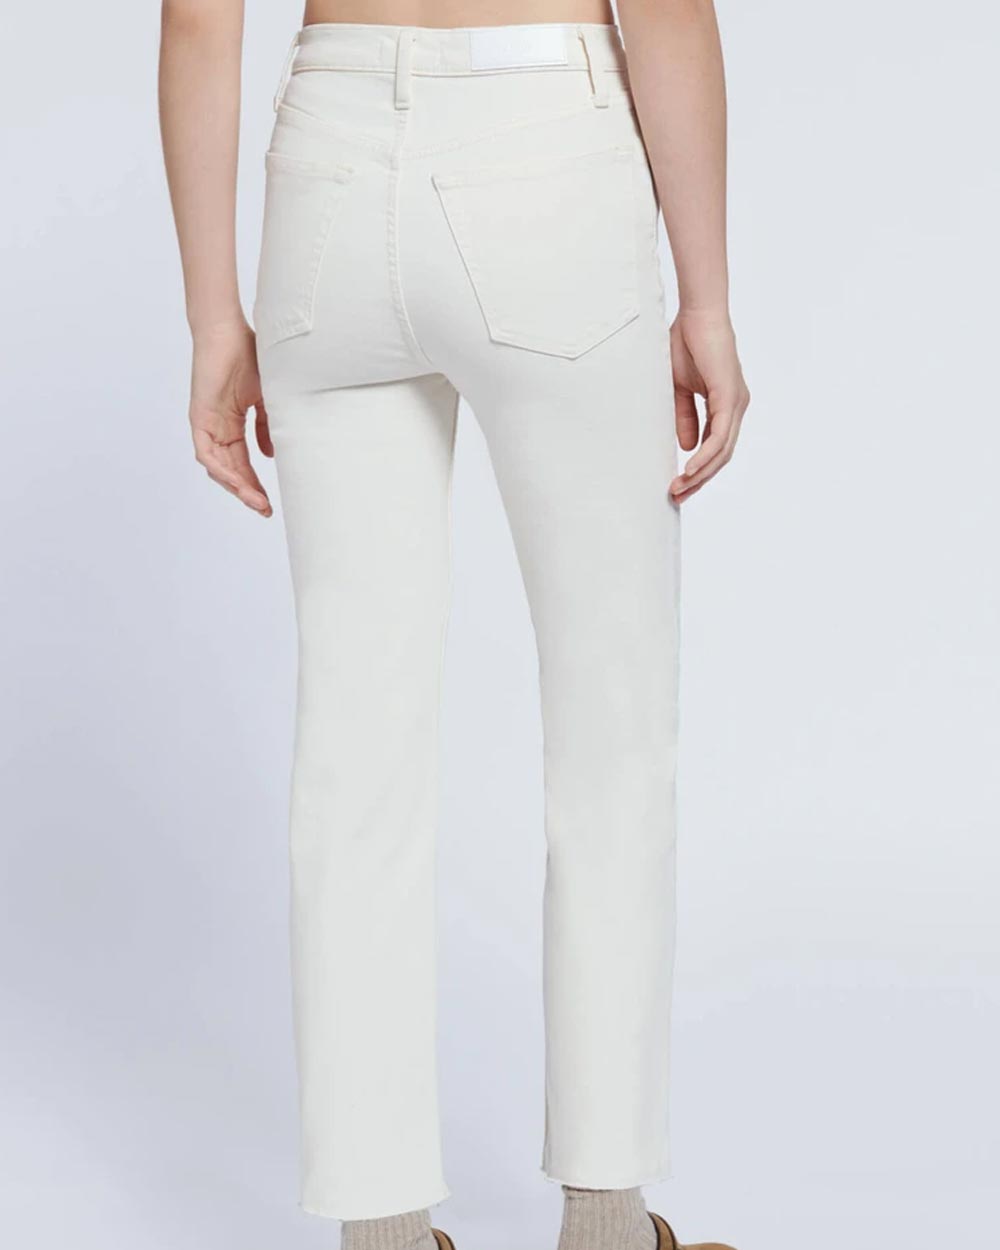 70s Stove Pipe Jean in Vintage White